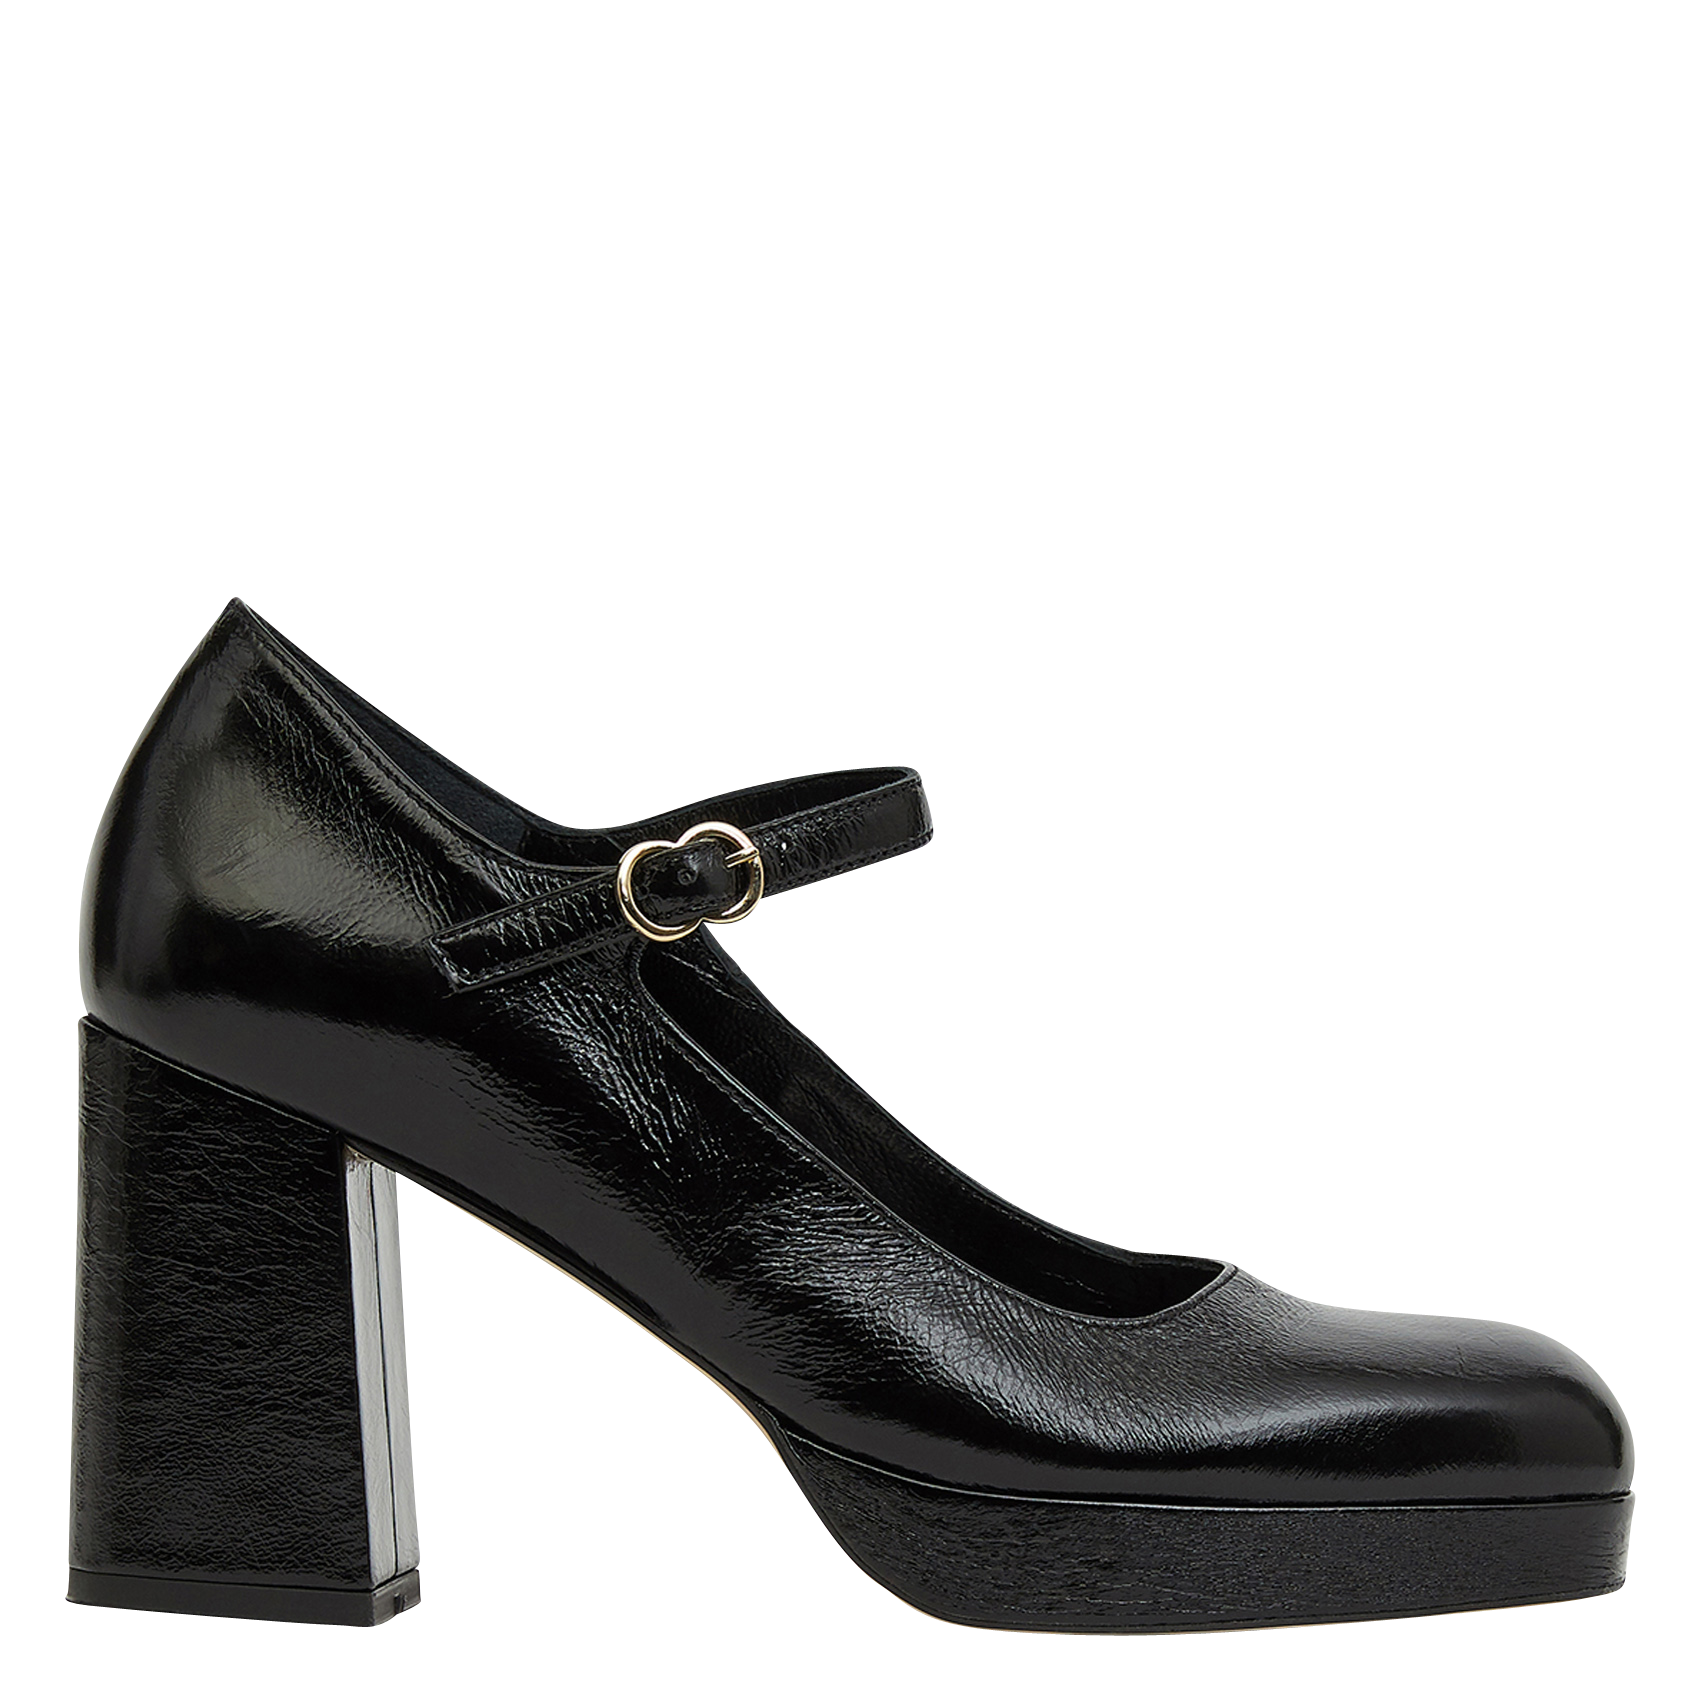 womens black heels sale